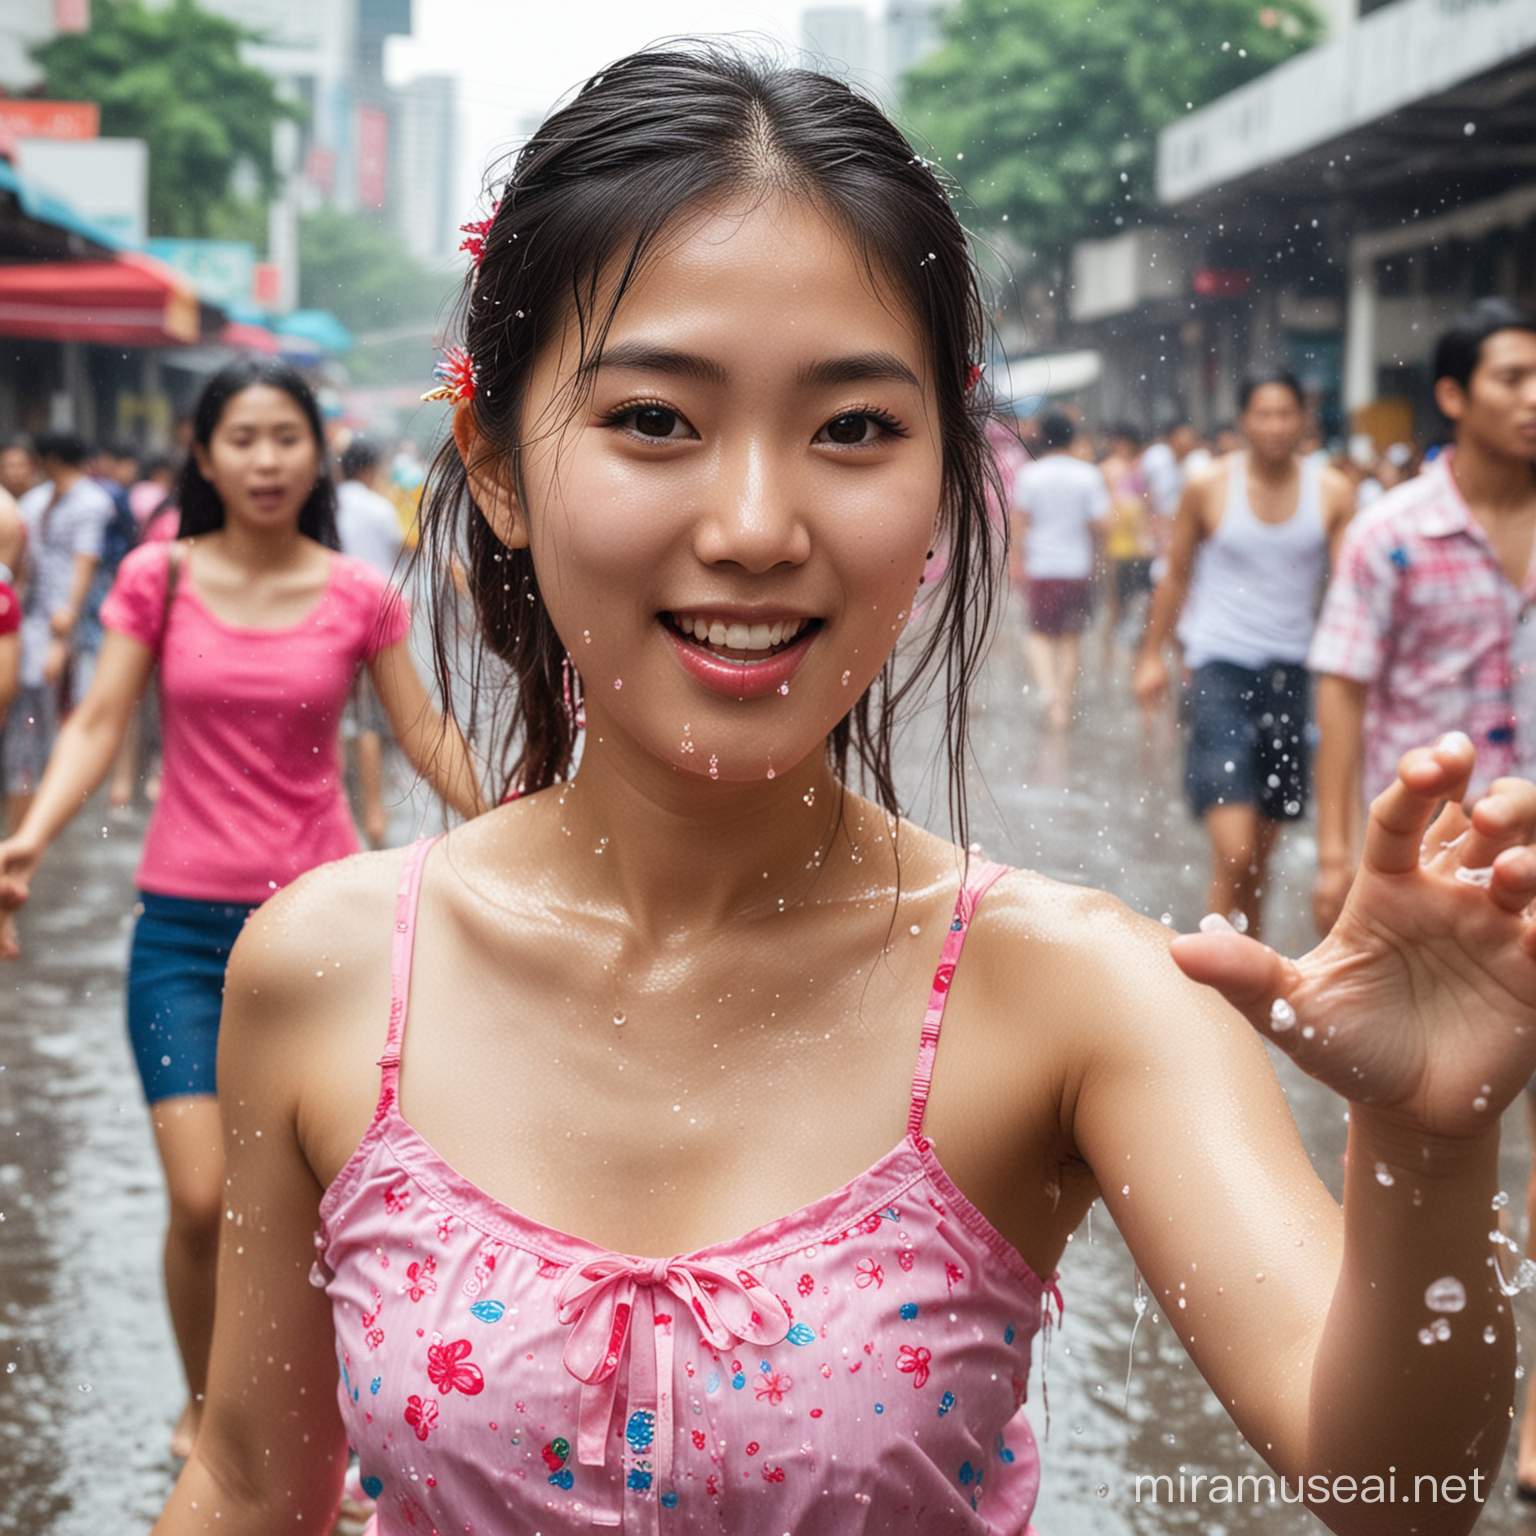 fine image of Korean girl play songkran festival on the street of bangkok, thailand